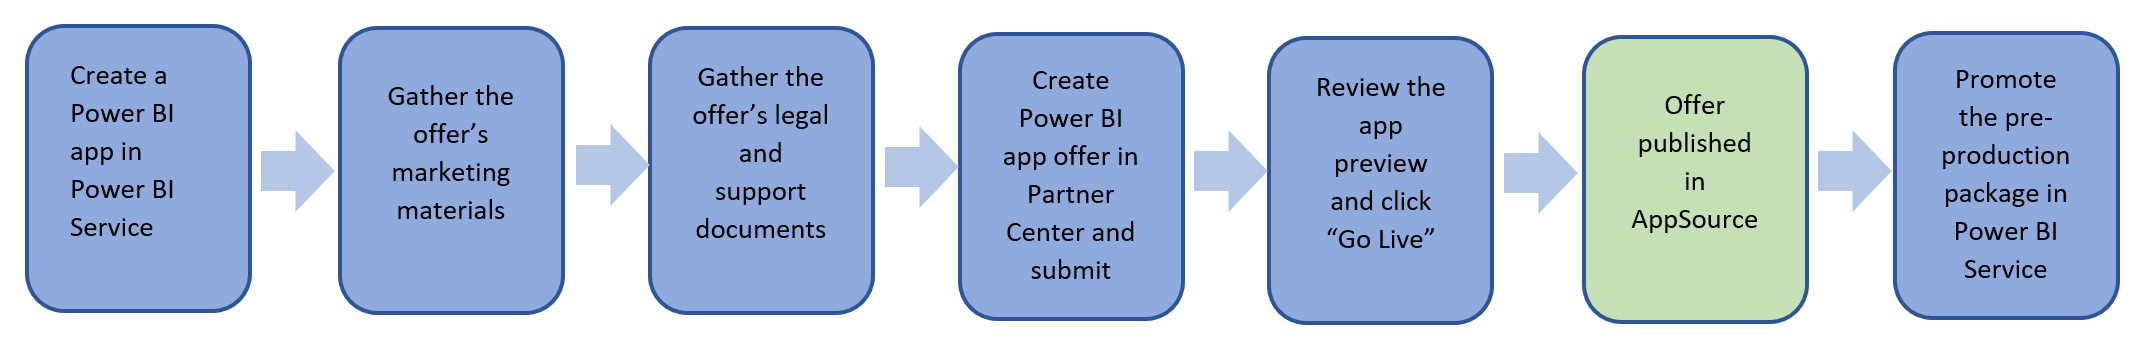 Power BI アプリ オファーを発行する手順の概要。